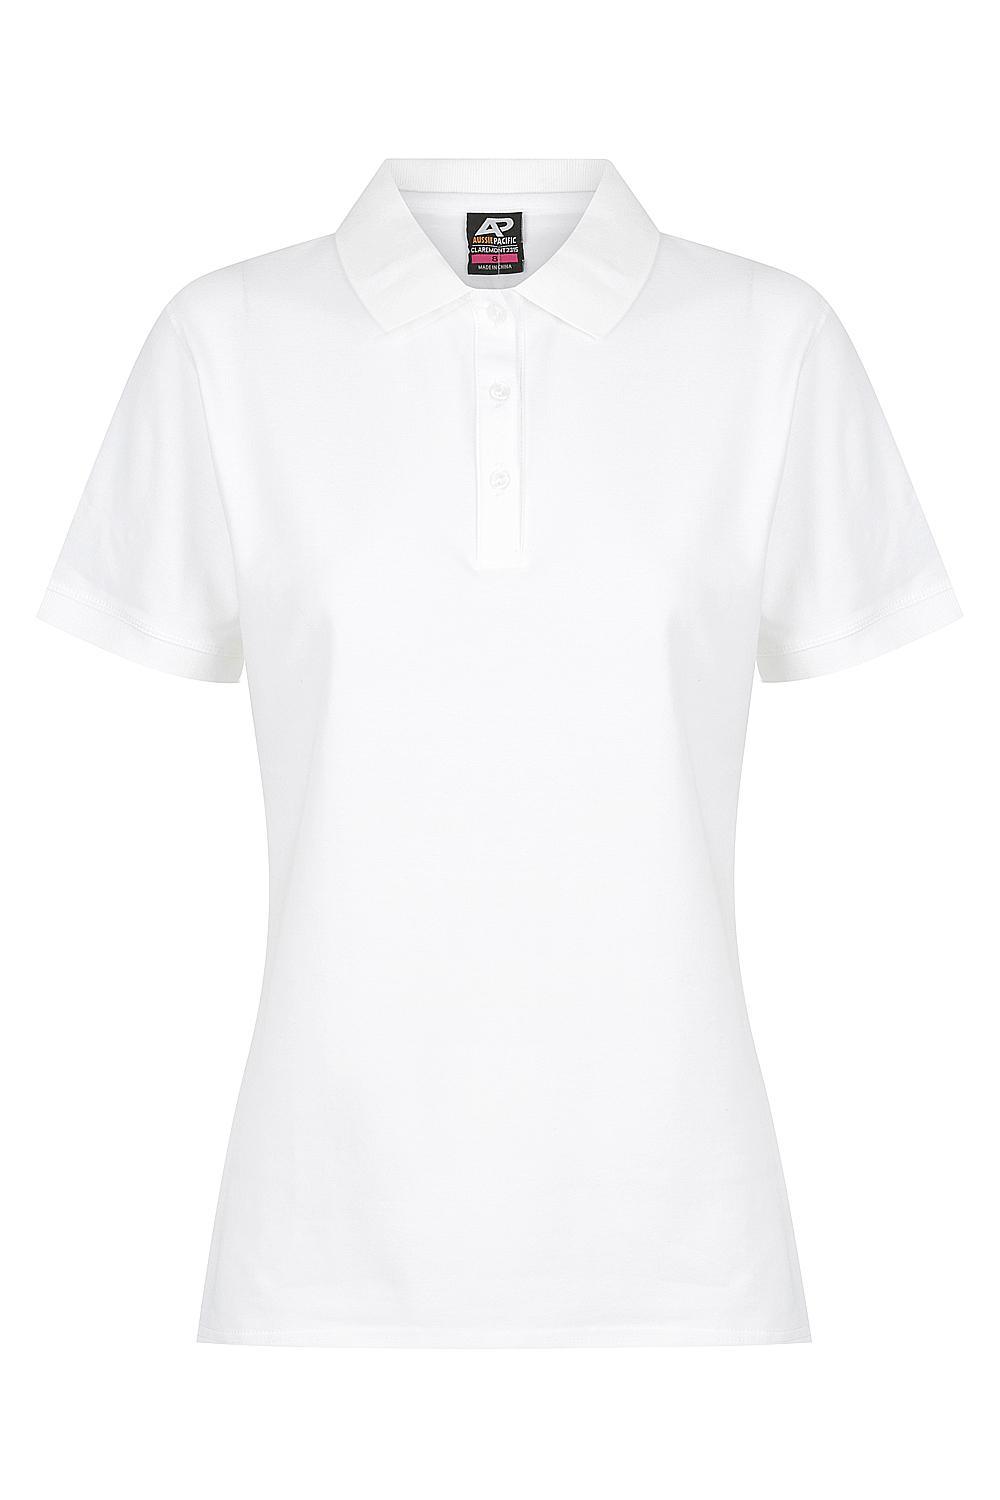 Custom Ladies Claremont Work Shirts - White